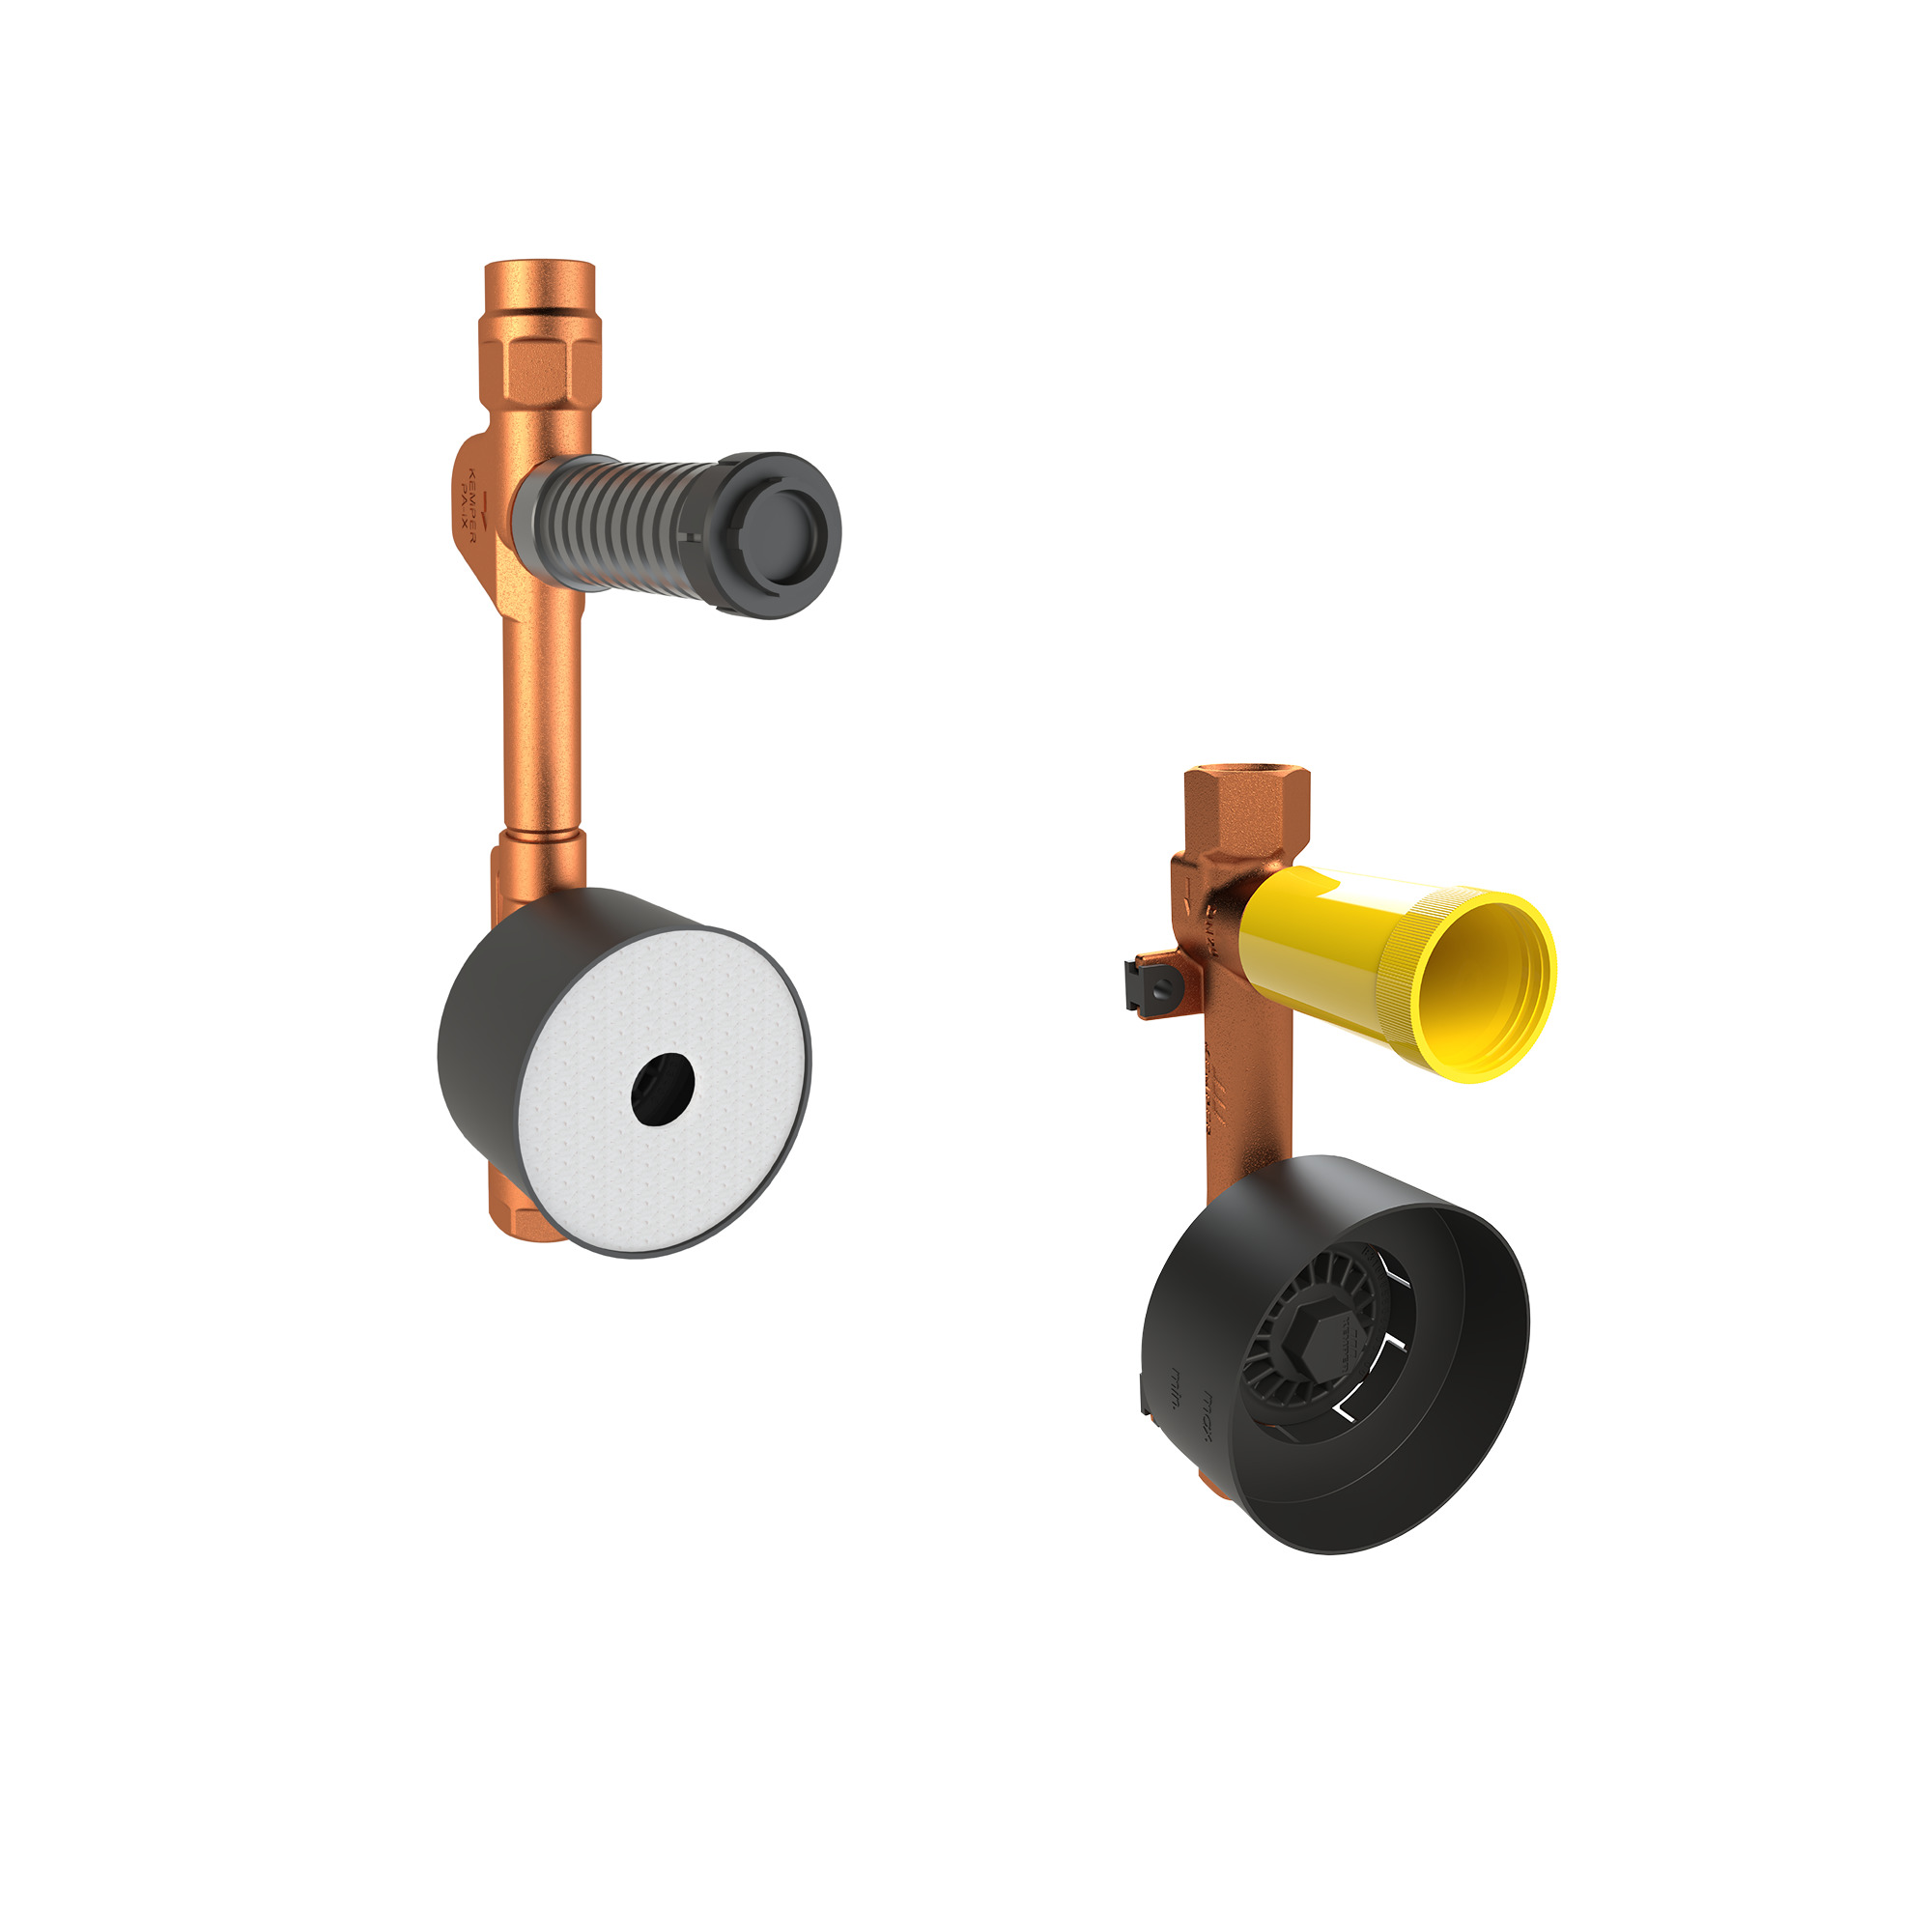 Stop valve water meter combinations